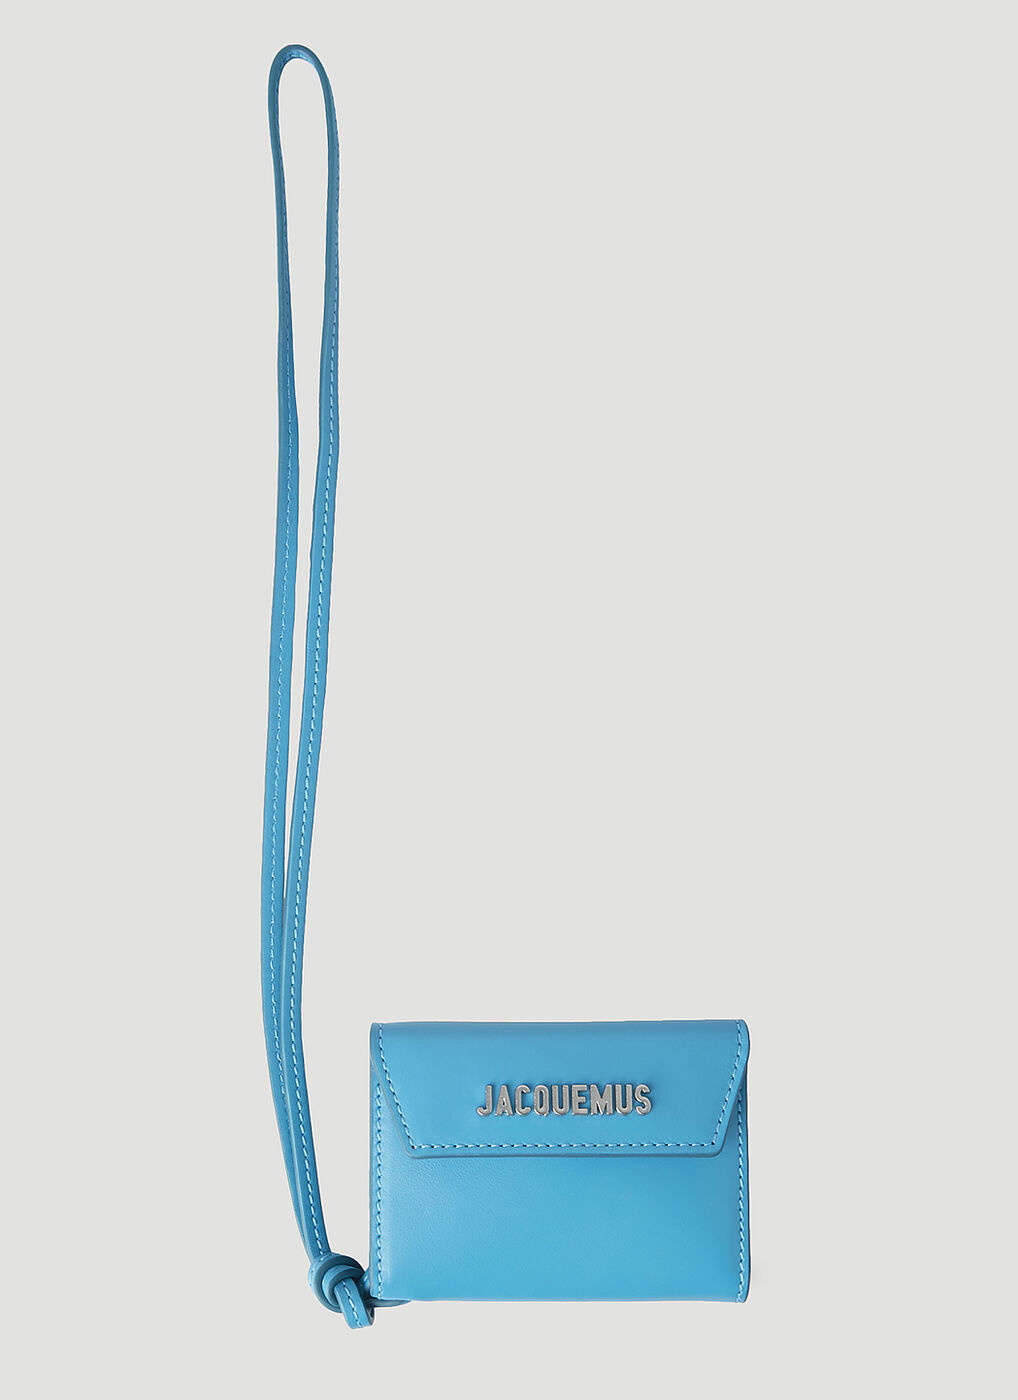 Jacquemus Le Porte Azur Strap Wallet - Blue